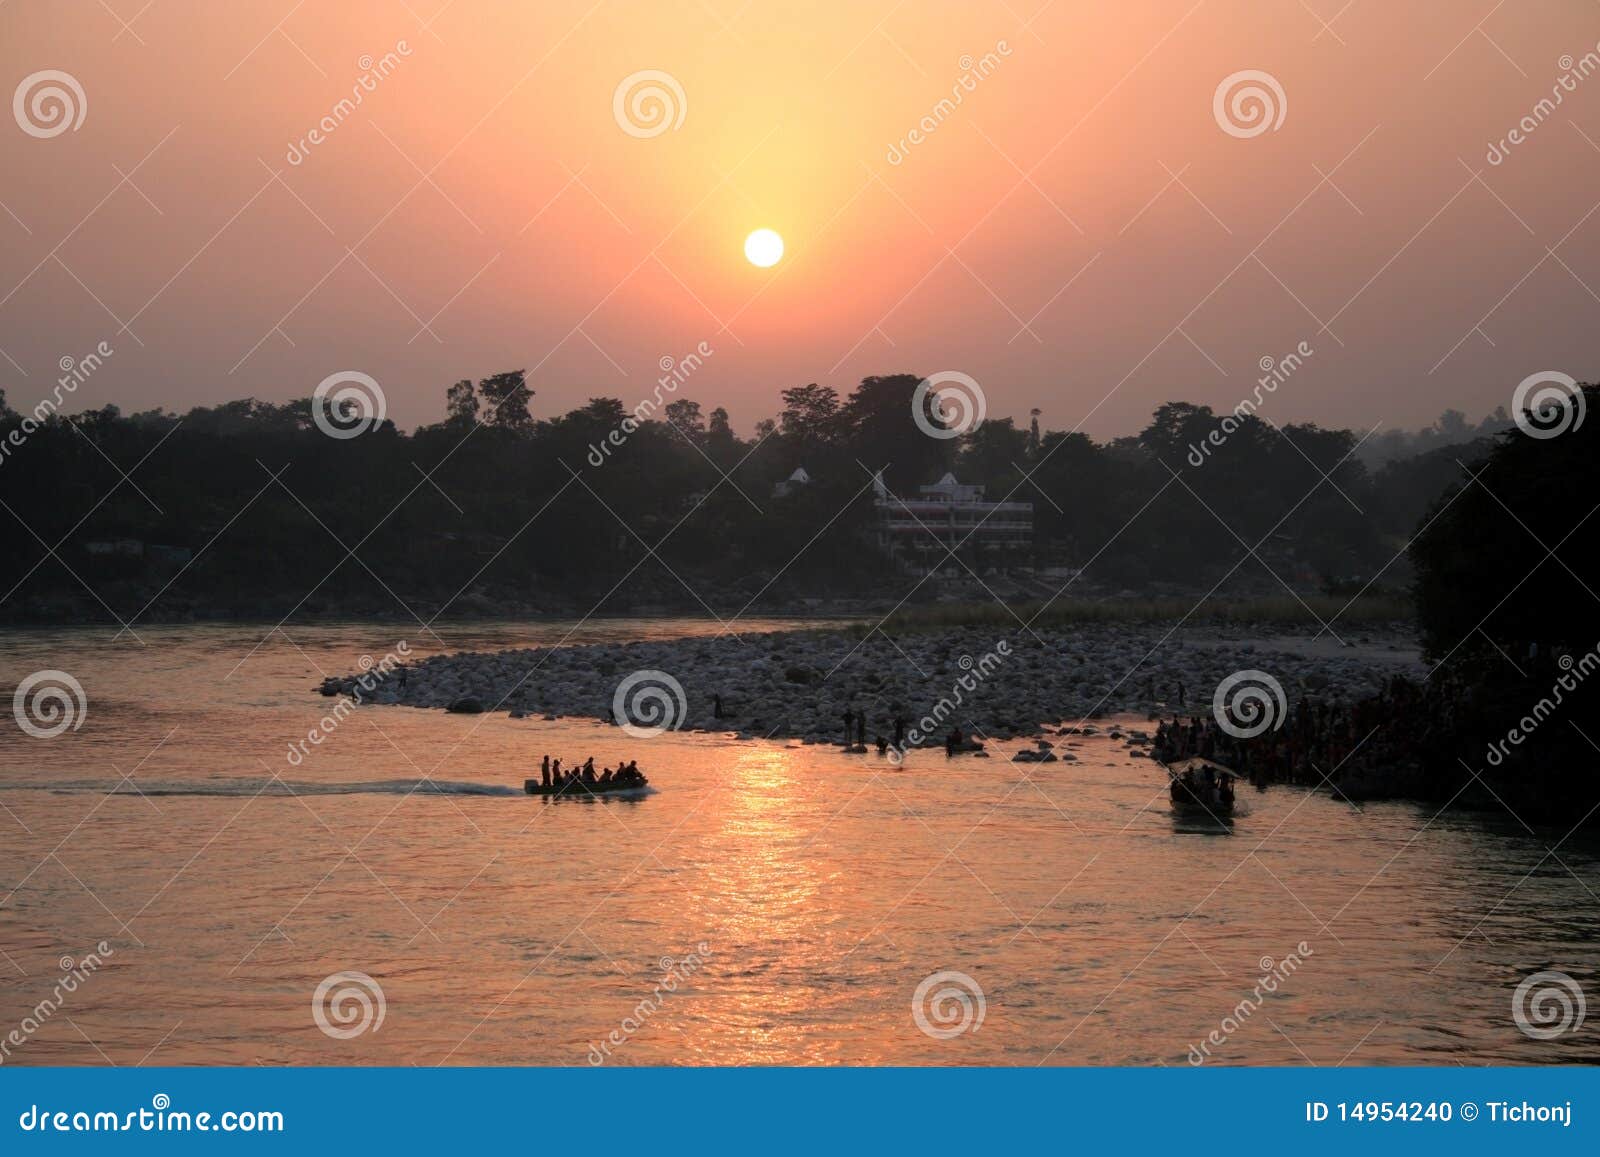 ganges river sunset